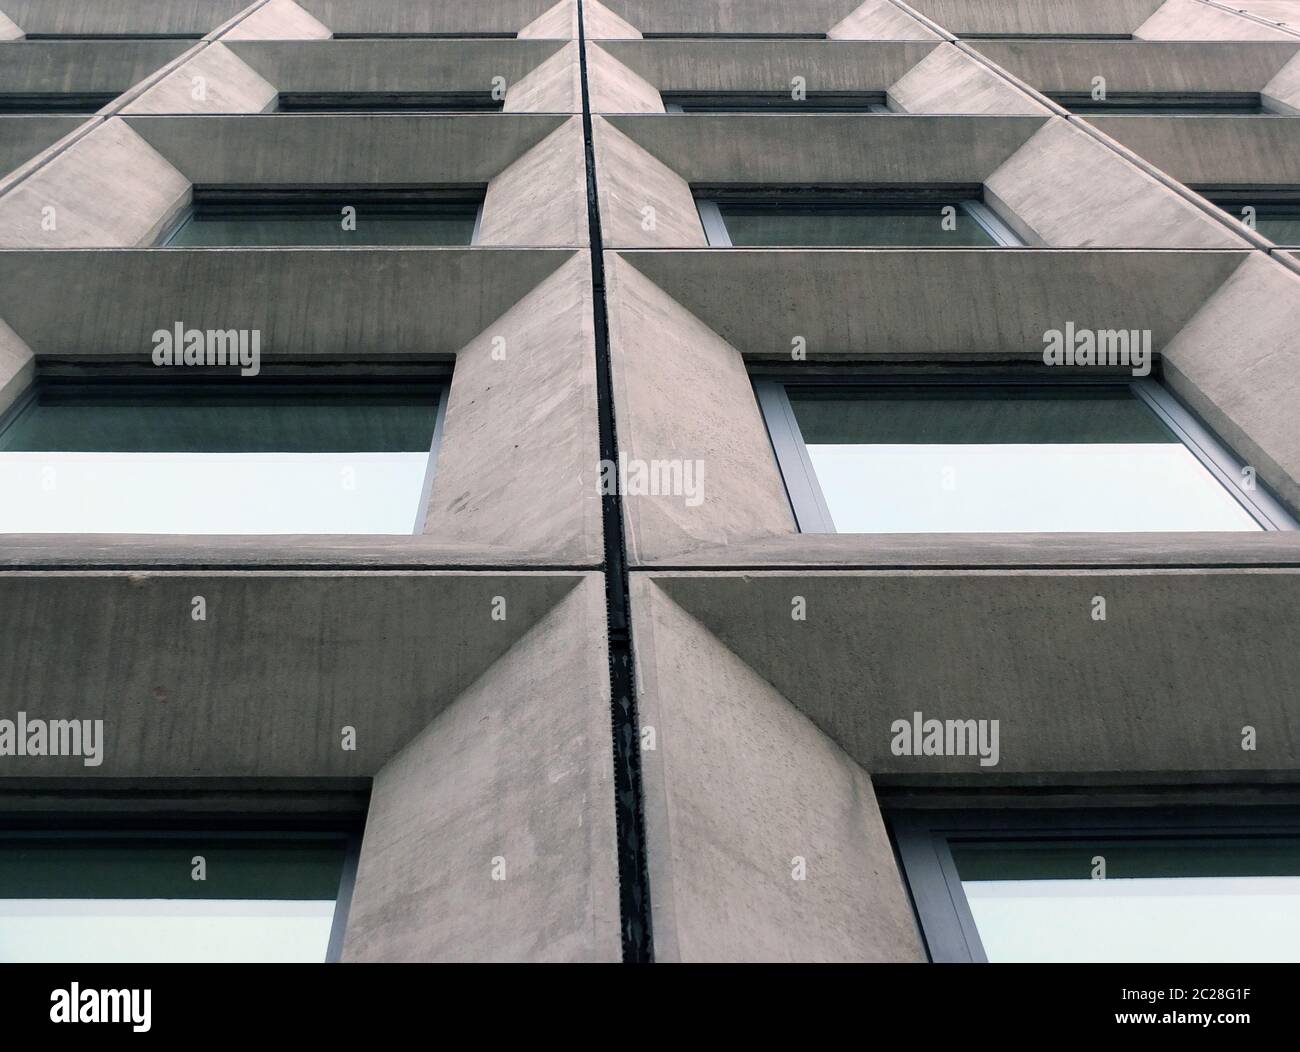 vue perspective de fenêtres géométriques en béton angulaire sur la façade d'un bâtiment de style brutaliste moderniste des années 1960 Banque D'Images